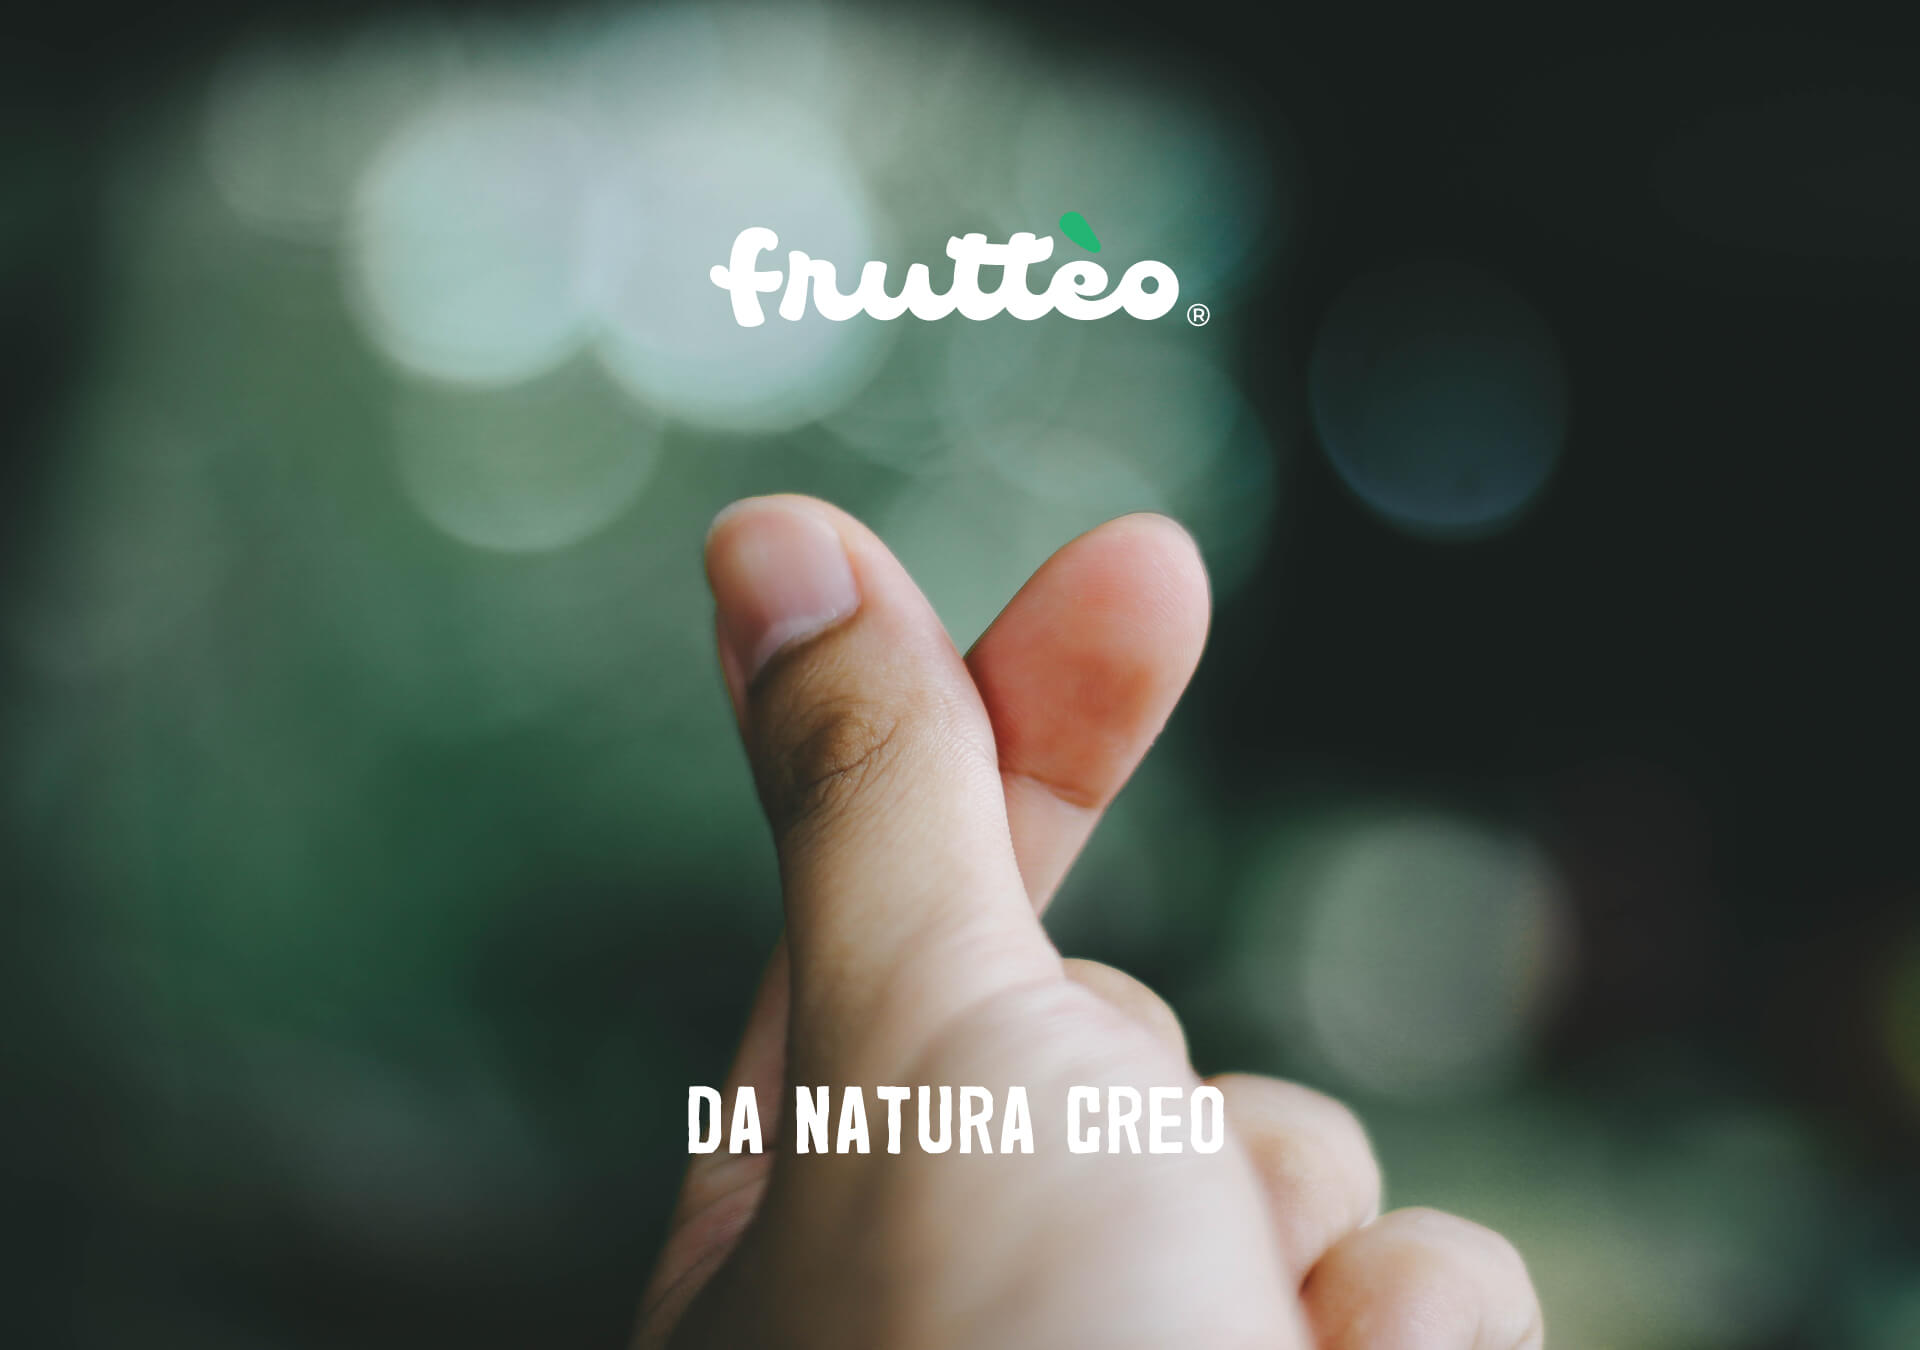 Frutteo, da natura creo - Dita di mano che schioccano e fondo verde sfocato